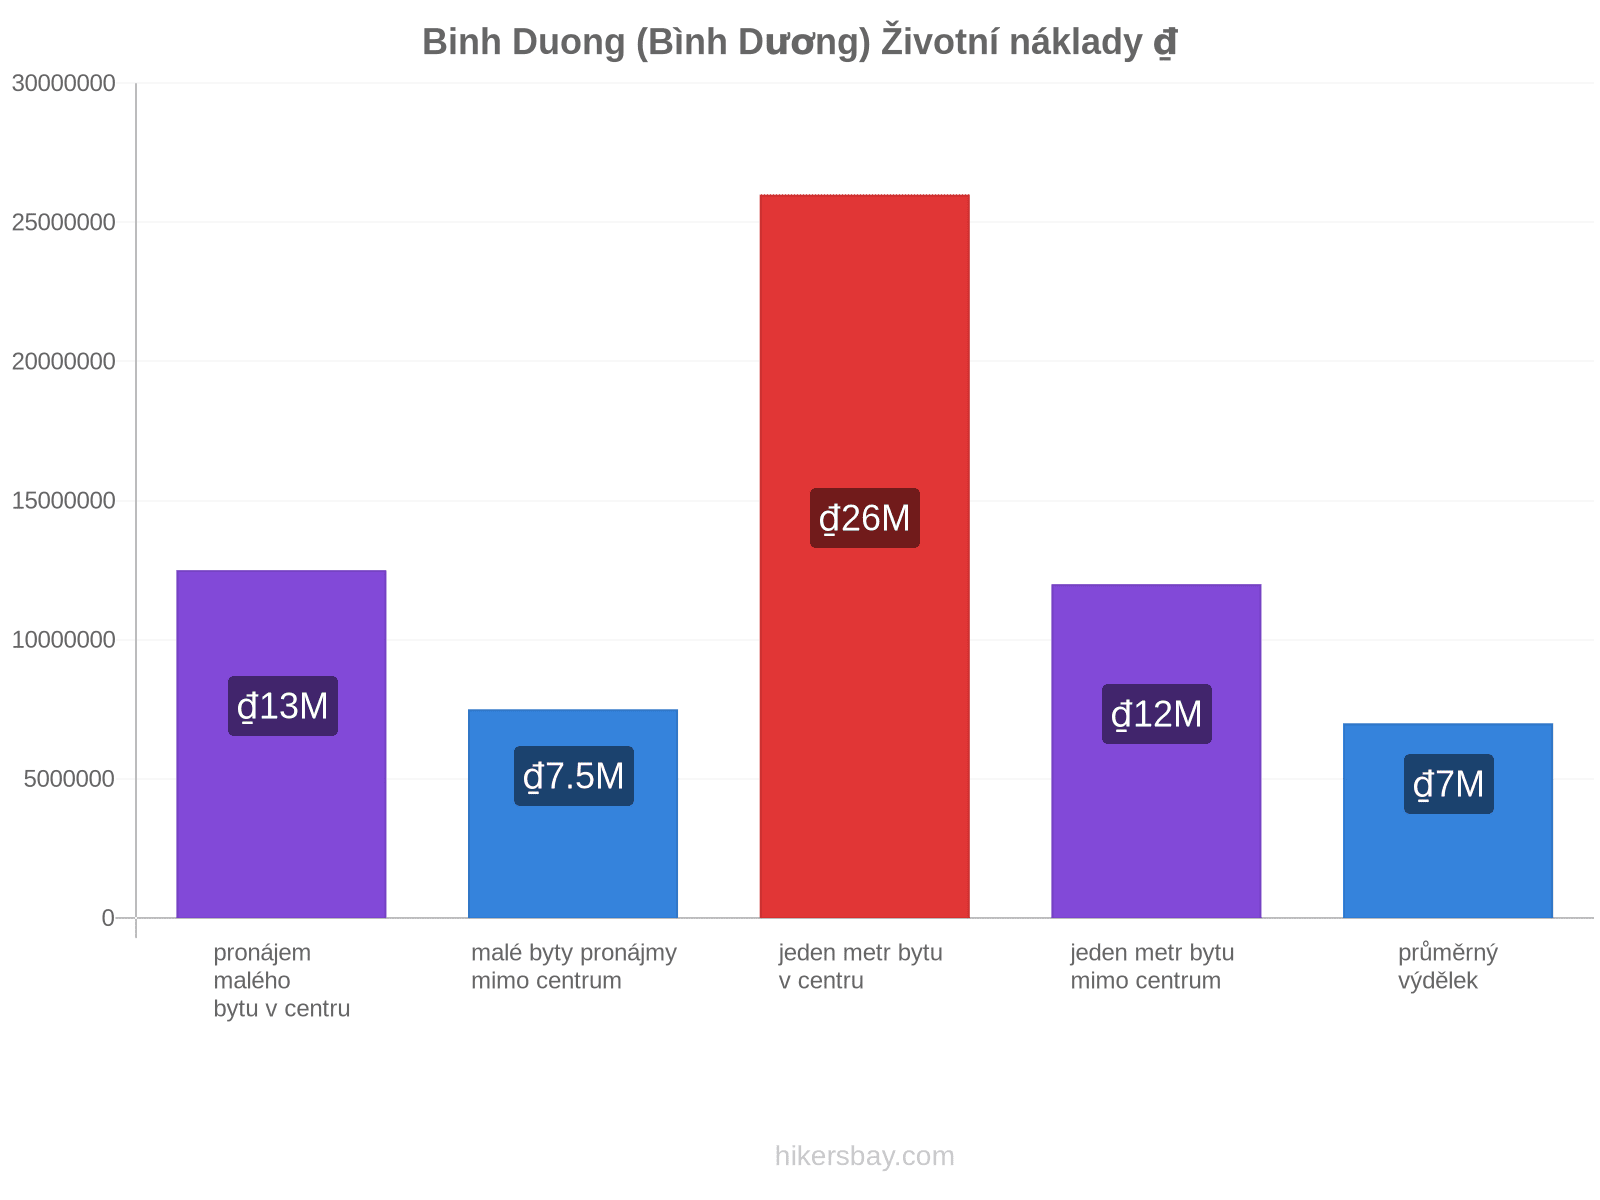 Binh Duong (Bình Dương) životní náklady hikersbay.com